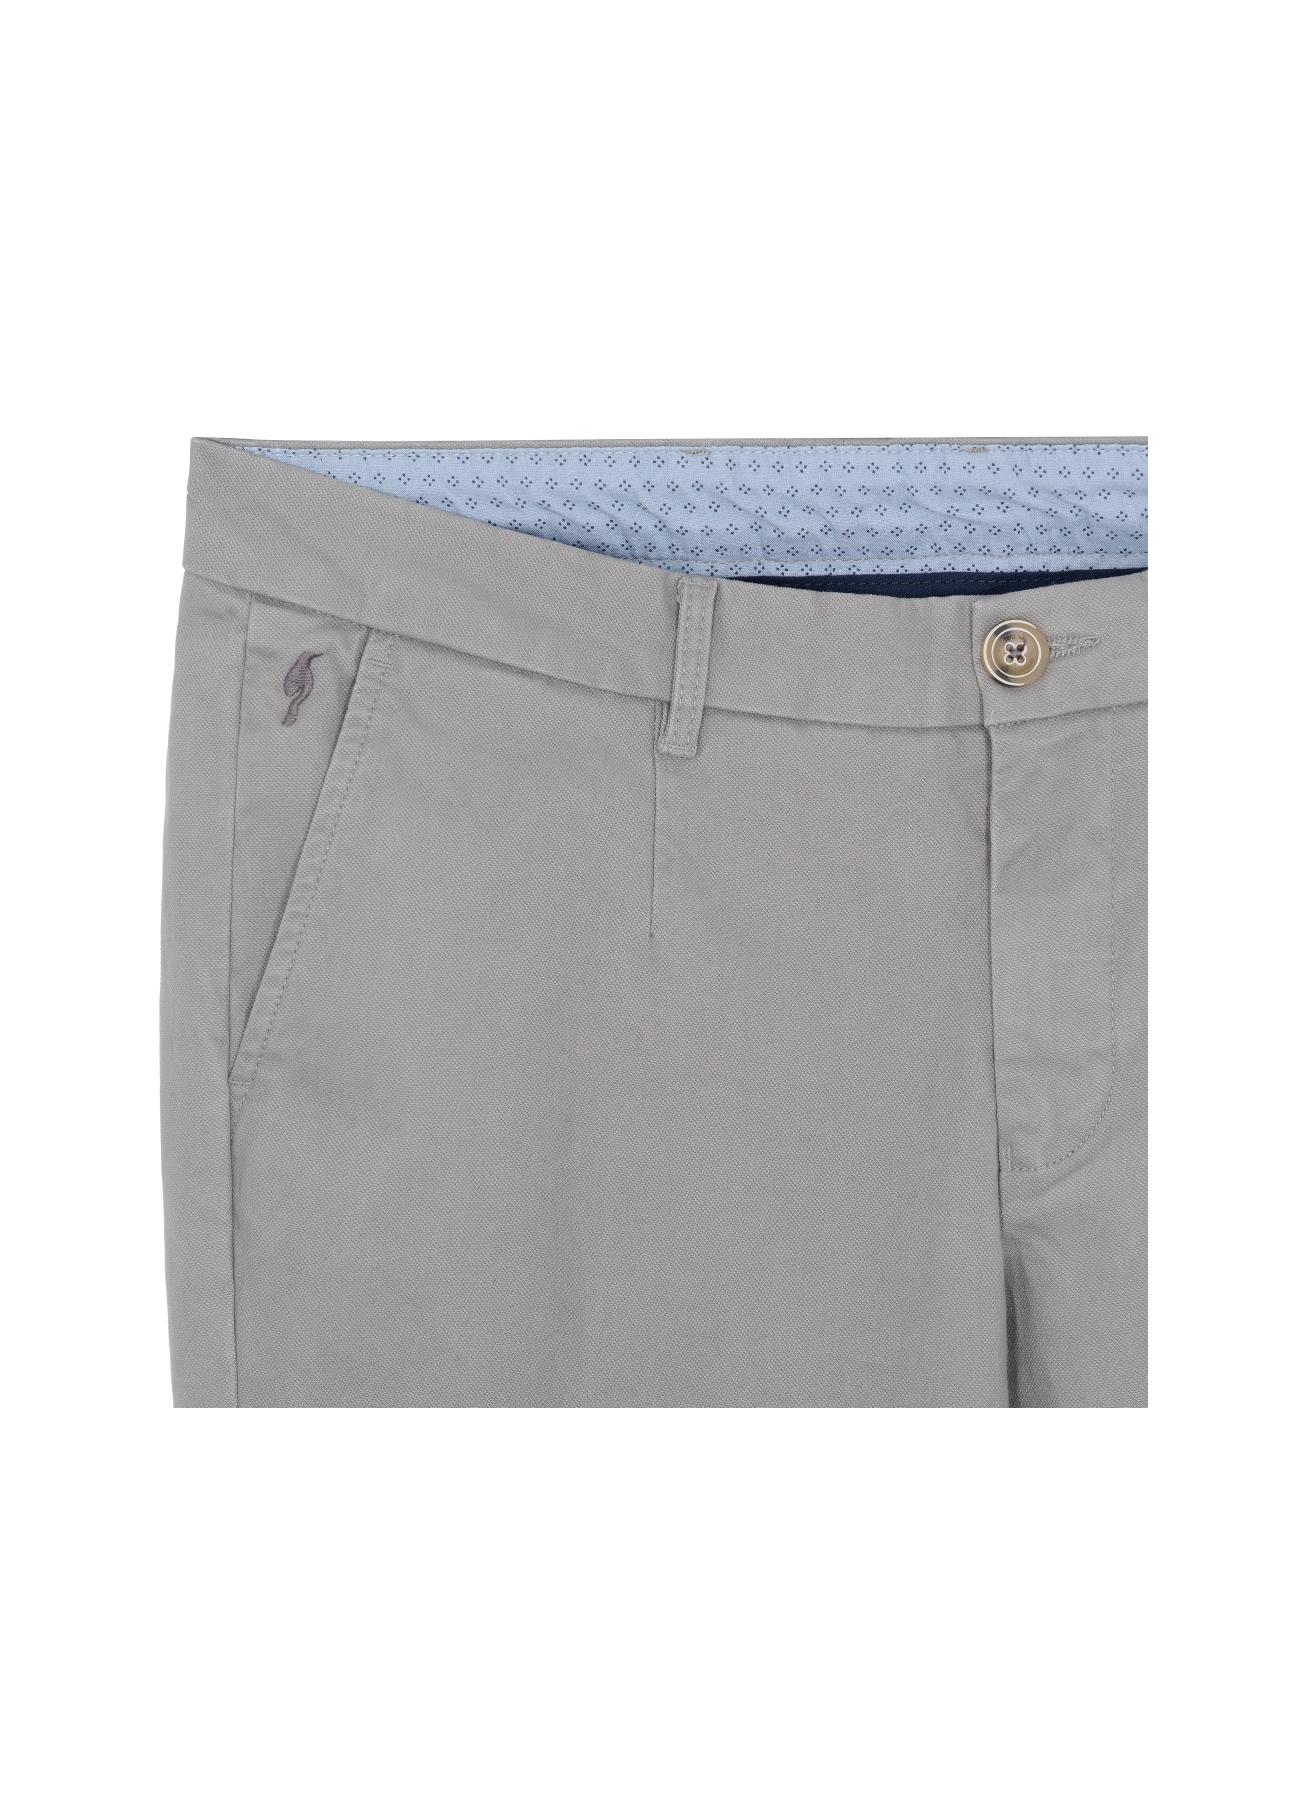 Spodnie męskie SPOMT-0032-91(Z19)